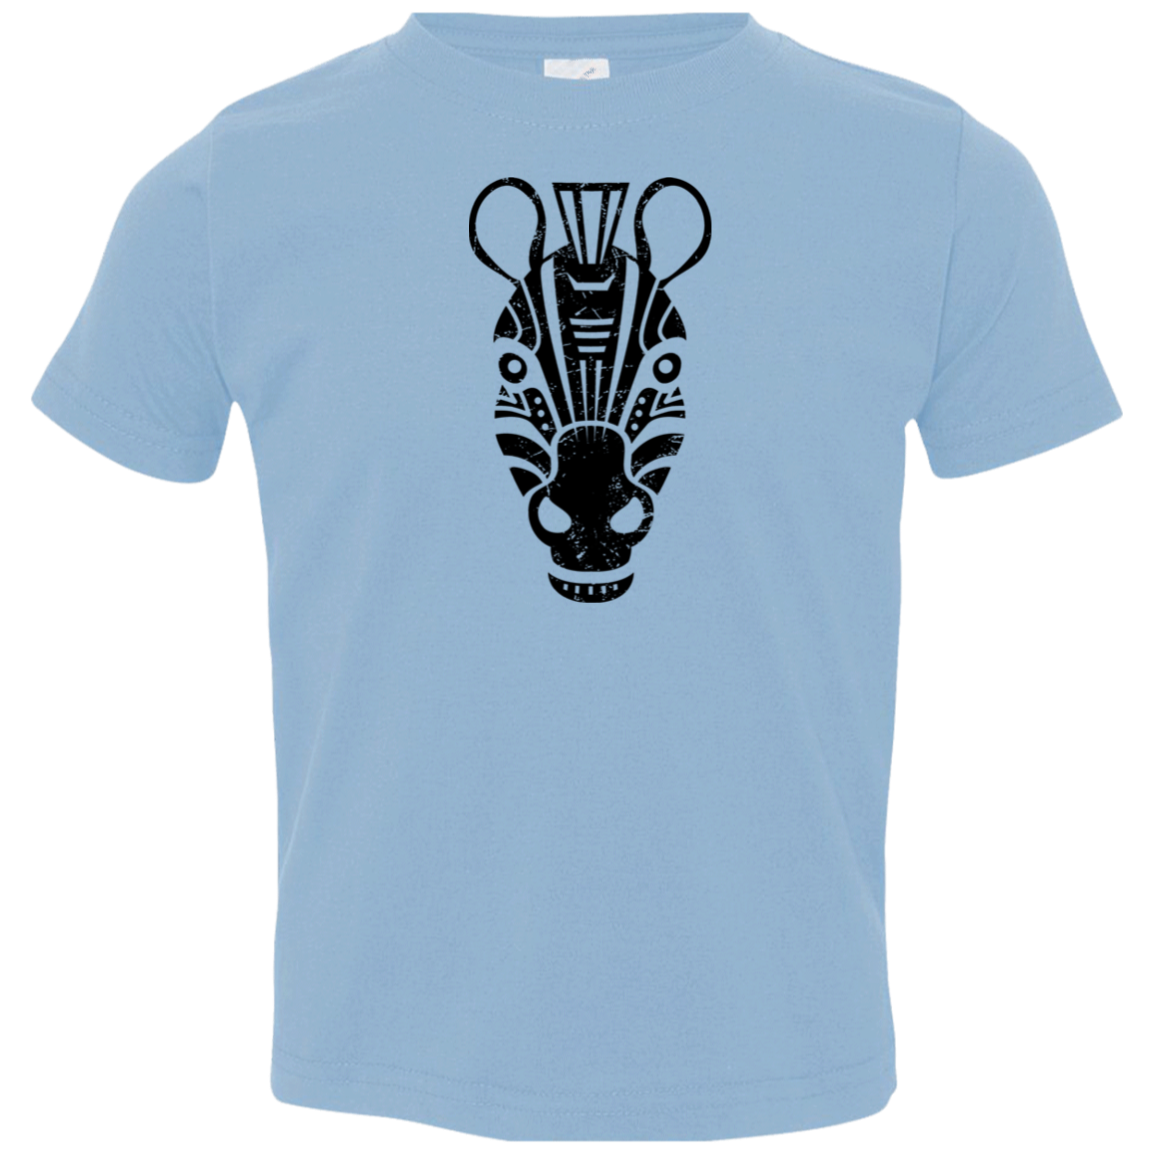 Black Distressed Emblem T-Shirt for Toddlers (Zebra/Stripe)